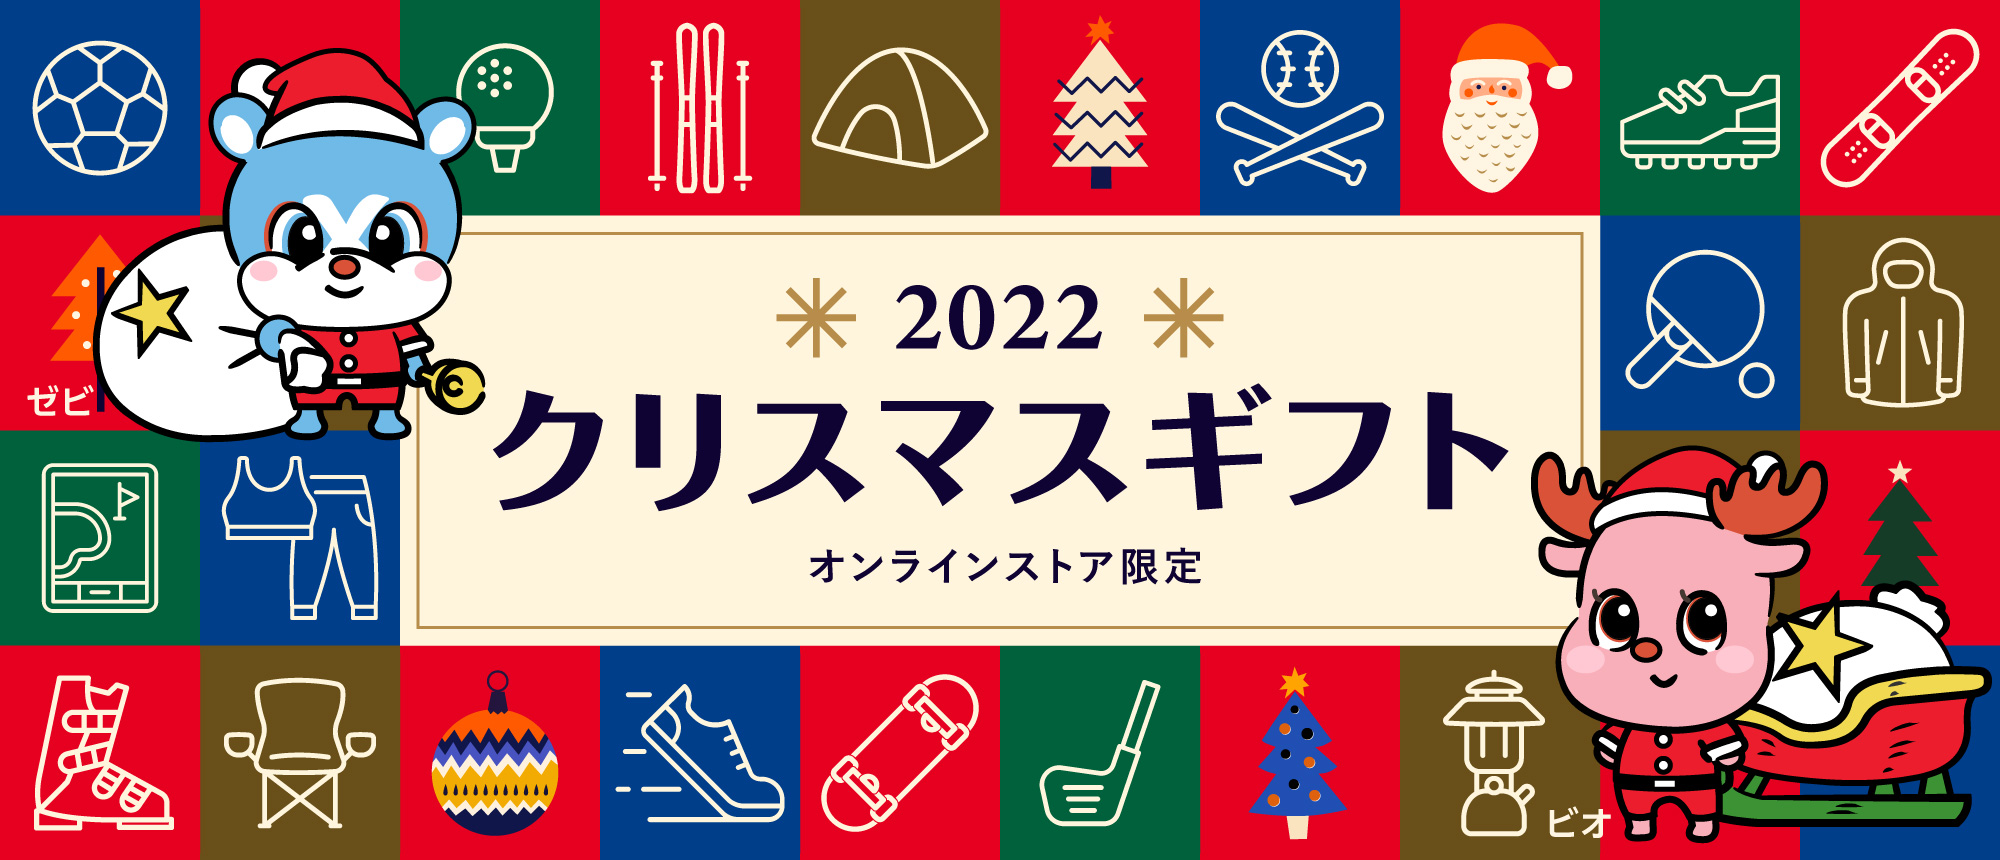 2022 クリスマスギフト